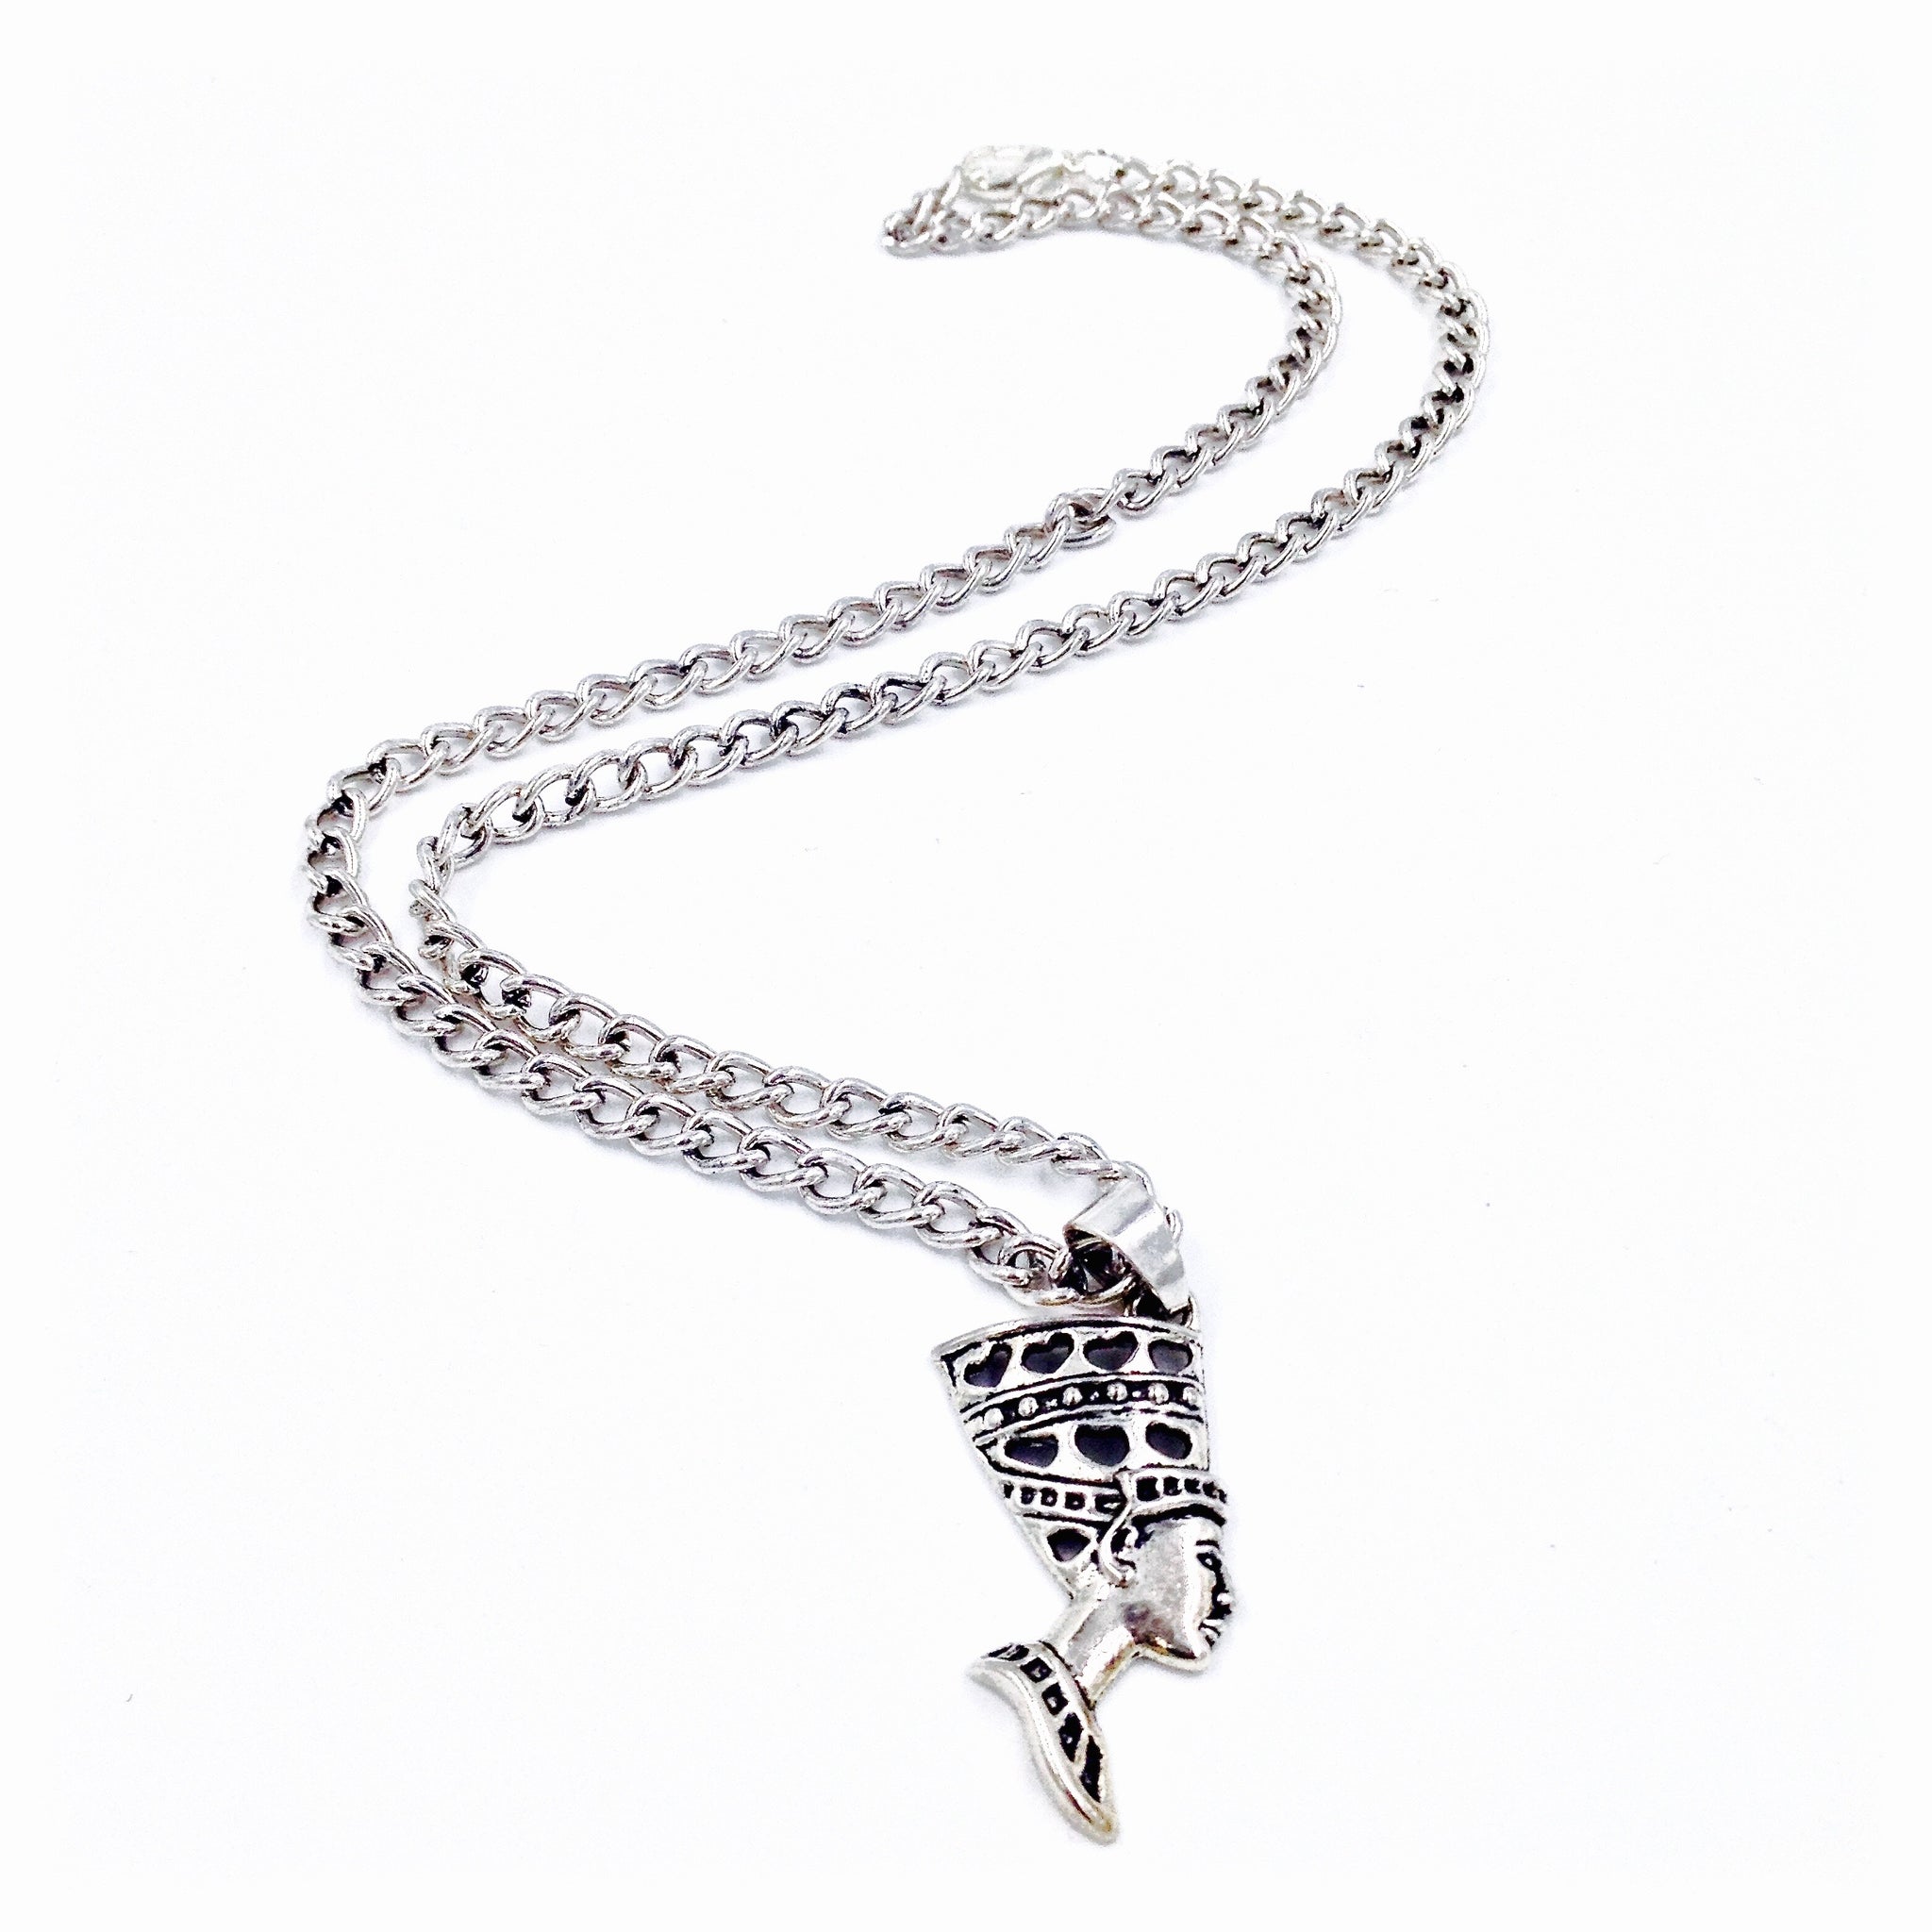 Silver Nefertiti Chain Necklace